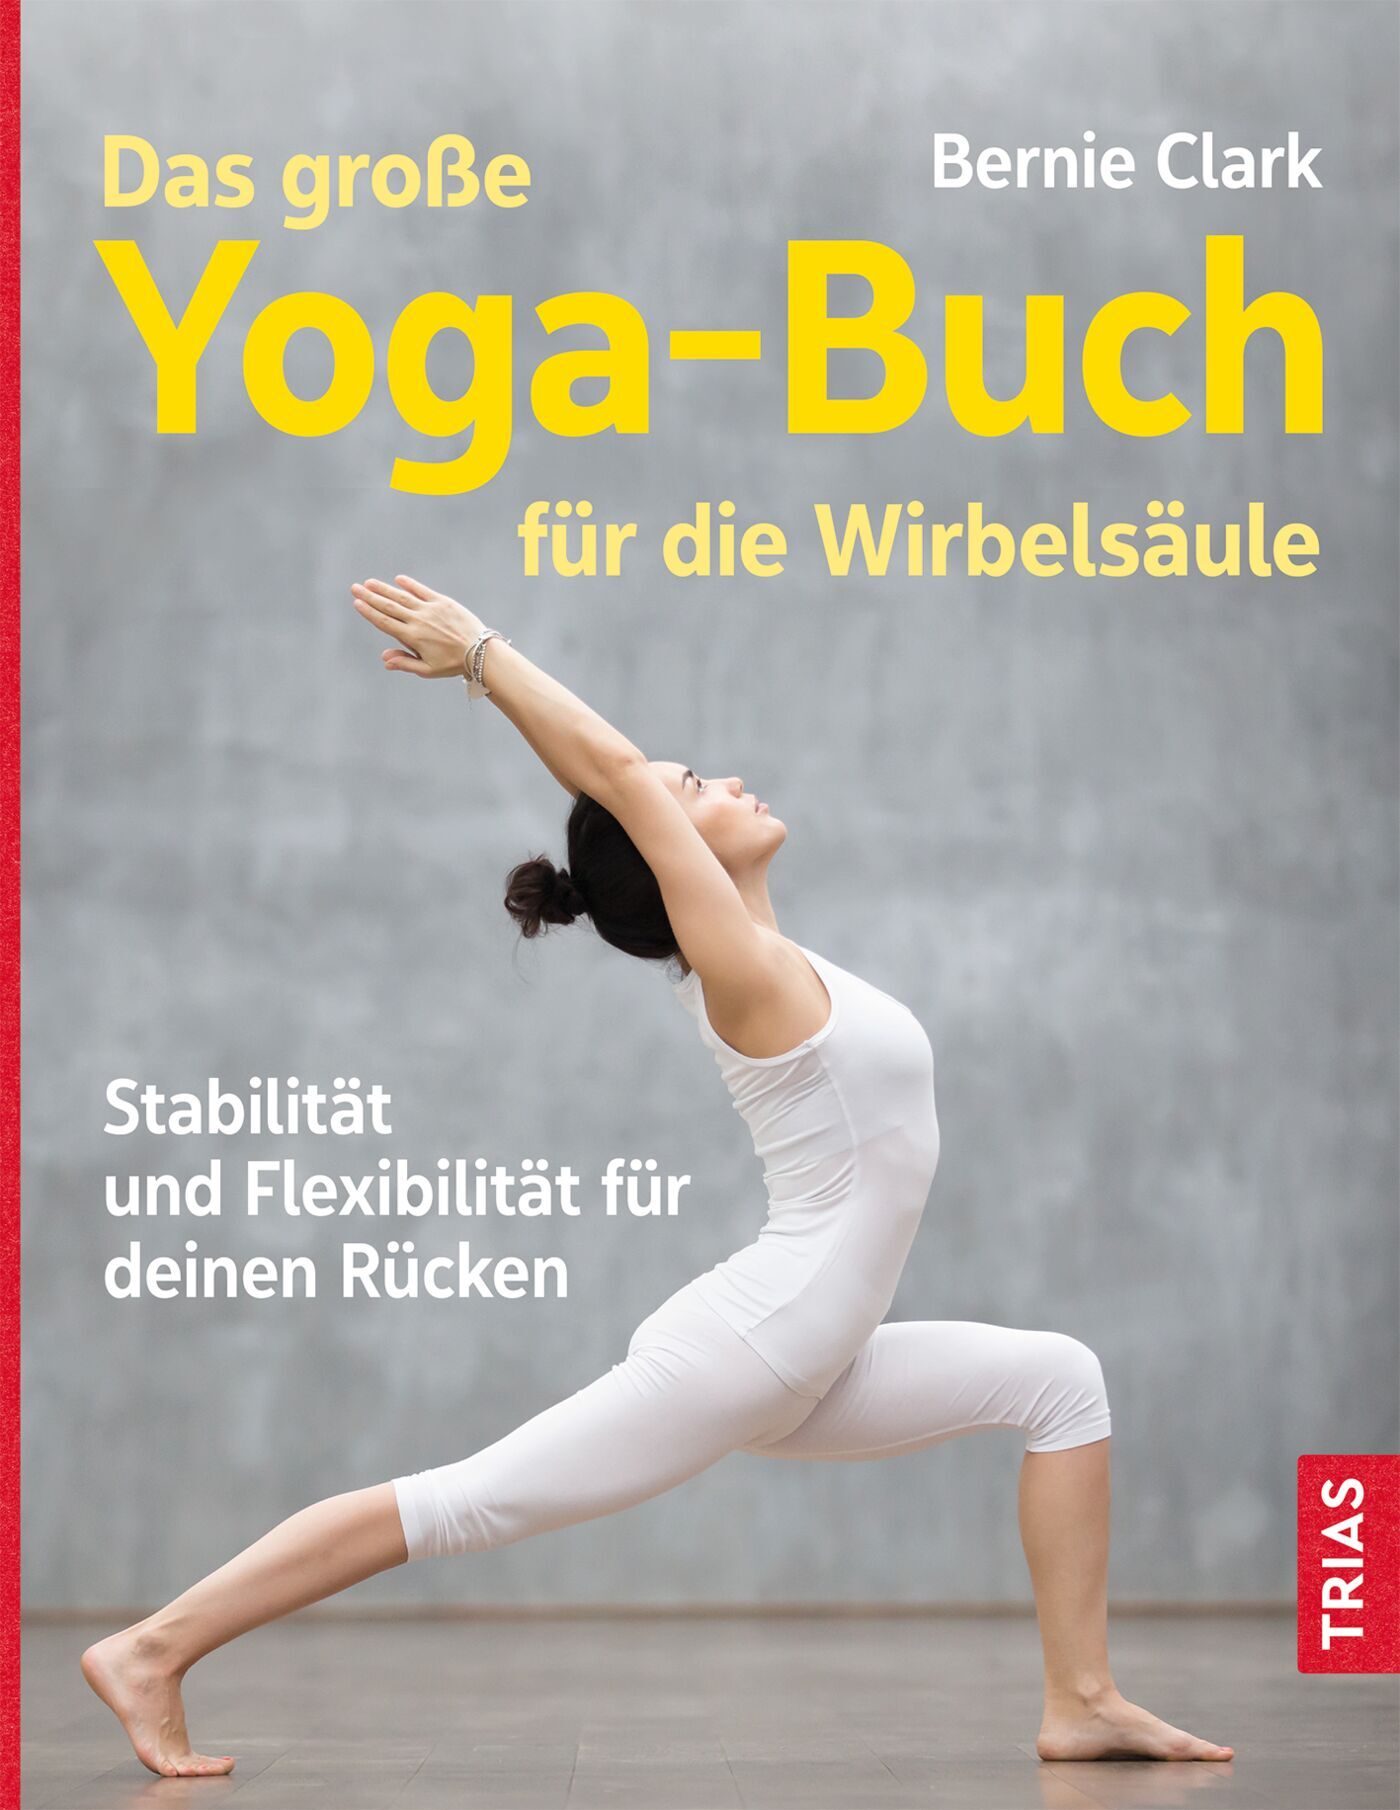 Das große Yoga-Buch für die Wirbelsäule, 9783432115672